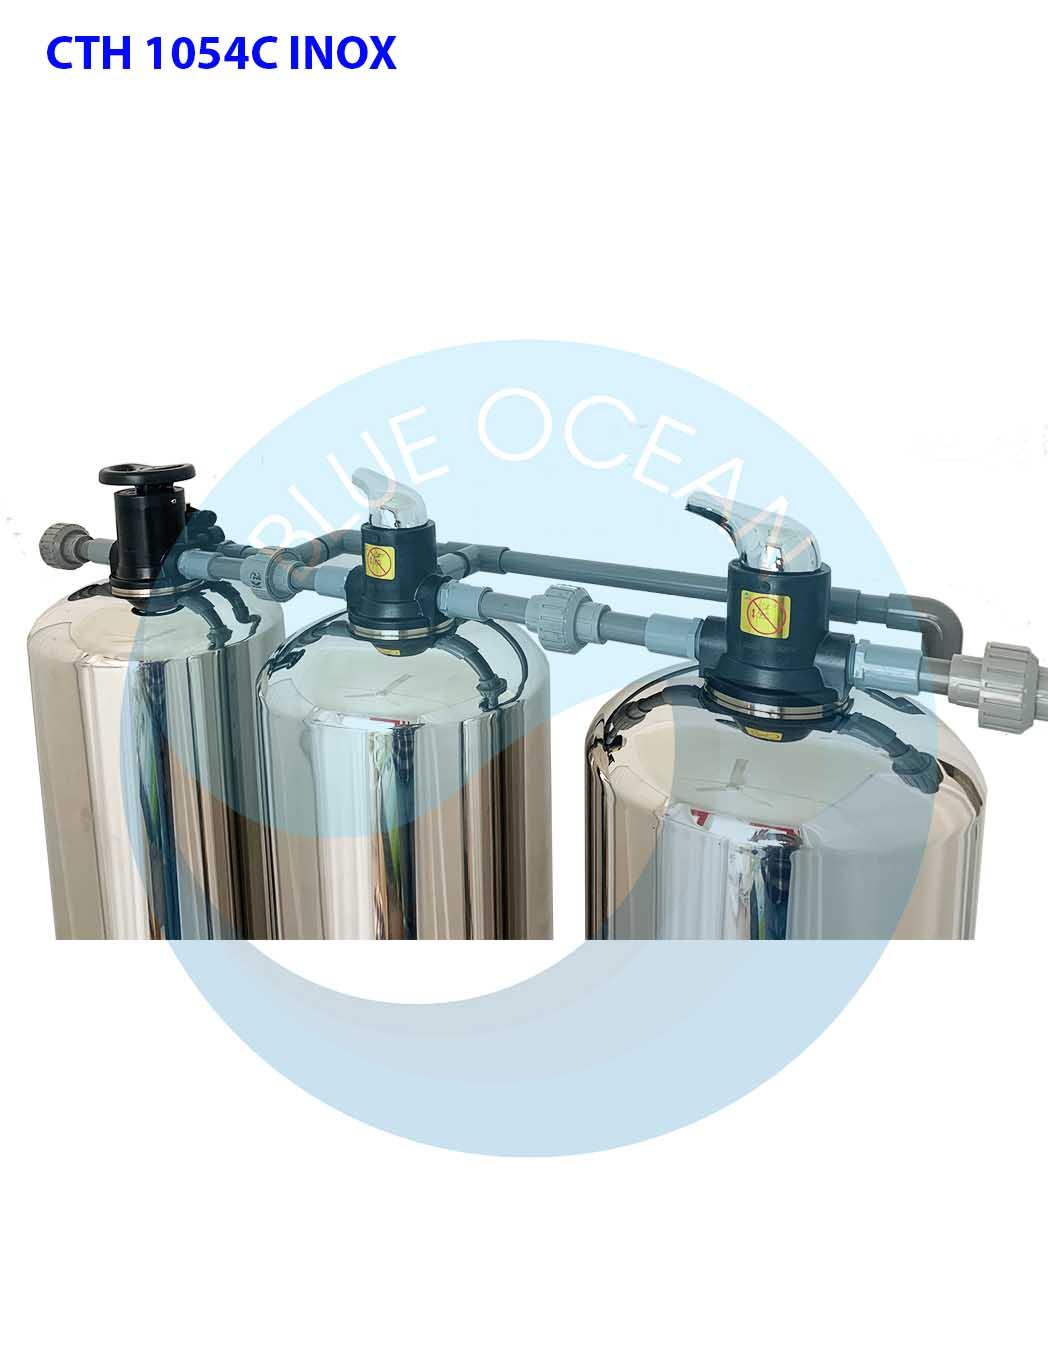 Thiết bị lọc và xử lý nước sinh hoạt tổng đầu nguồn cao cấp CTH 1054C INOX